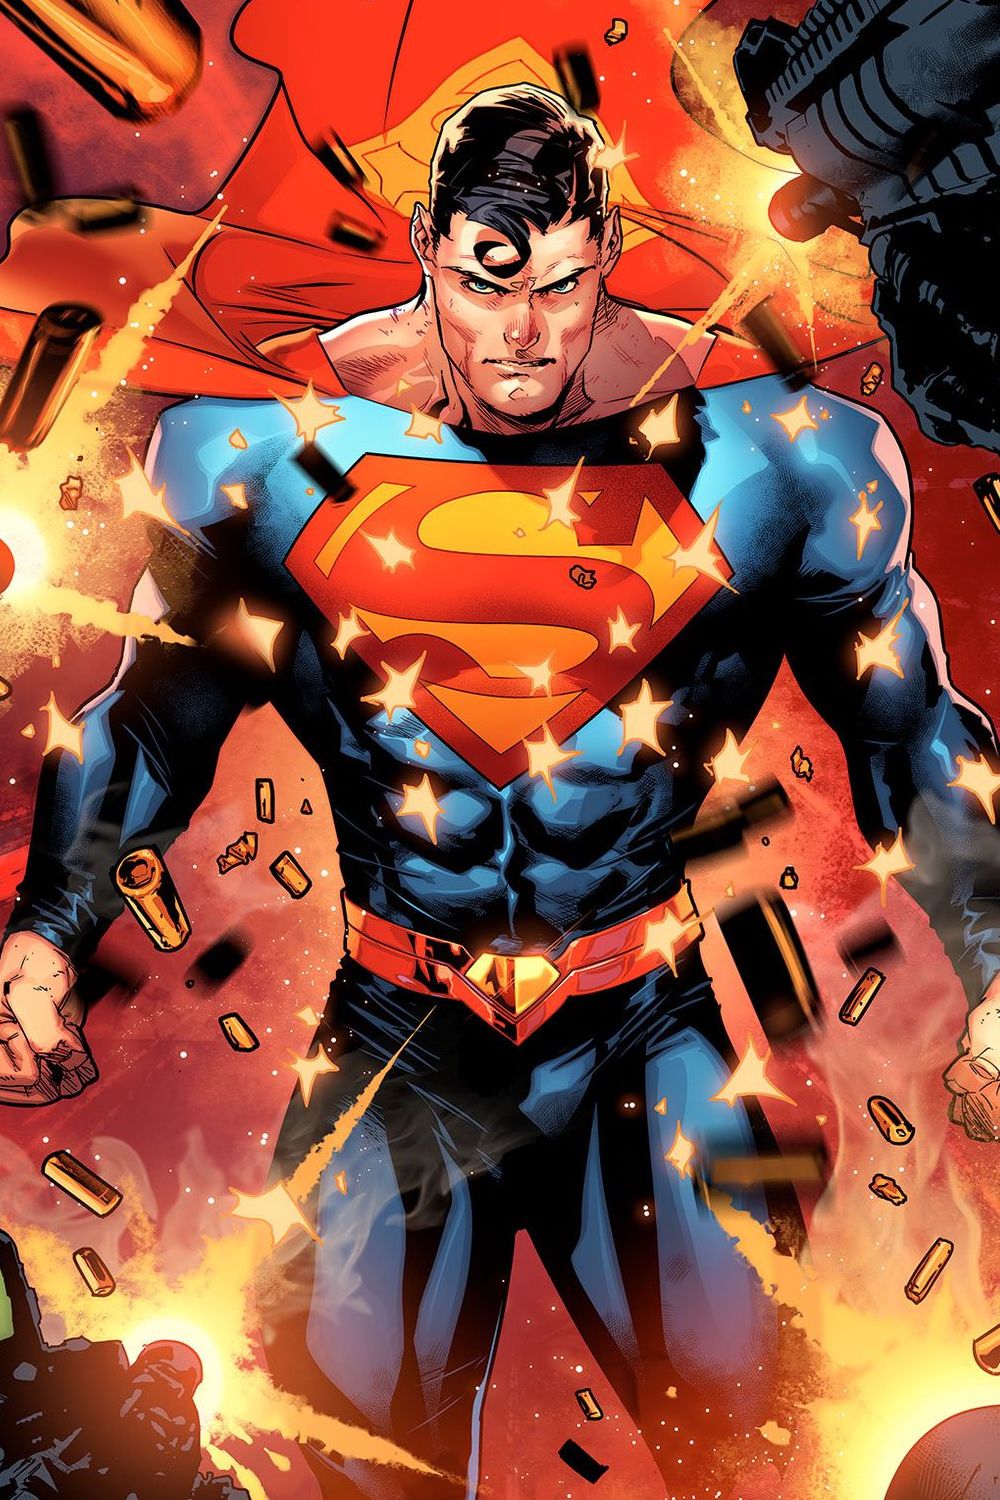 Superman desviando balas em quadrinhos por Jorge Jimenez